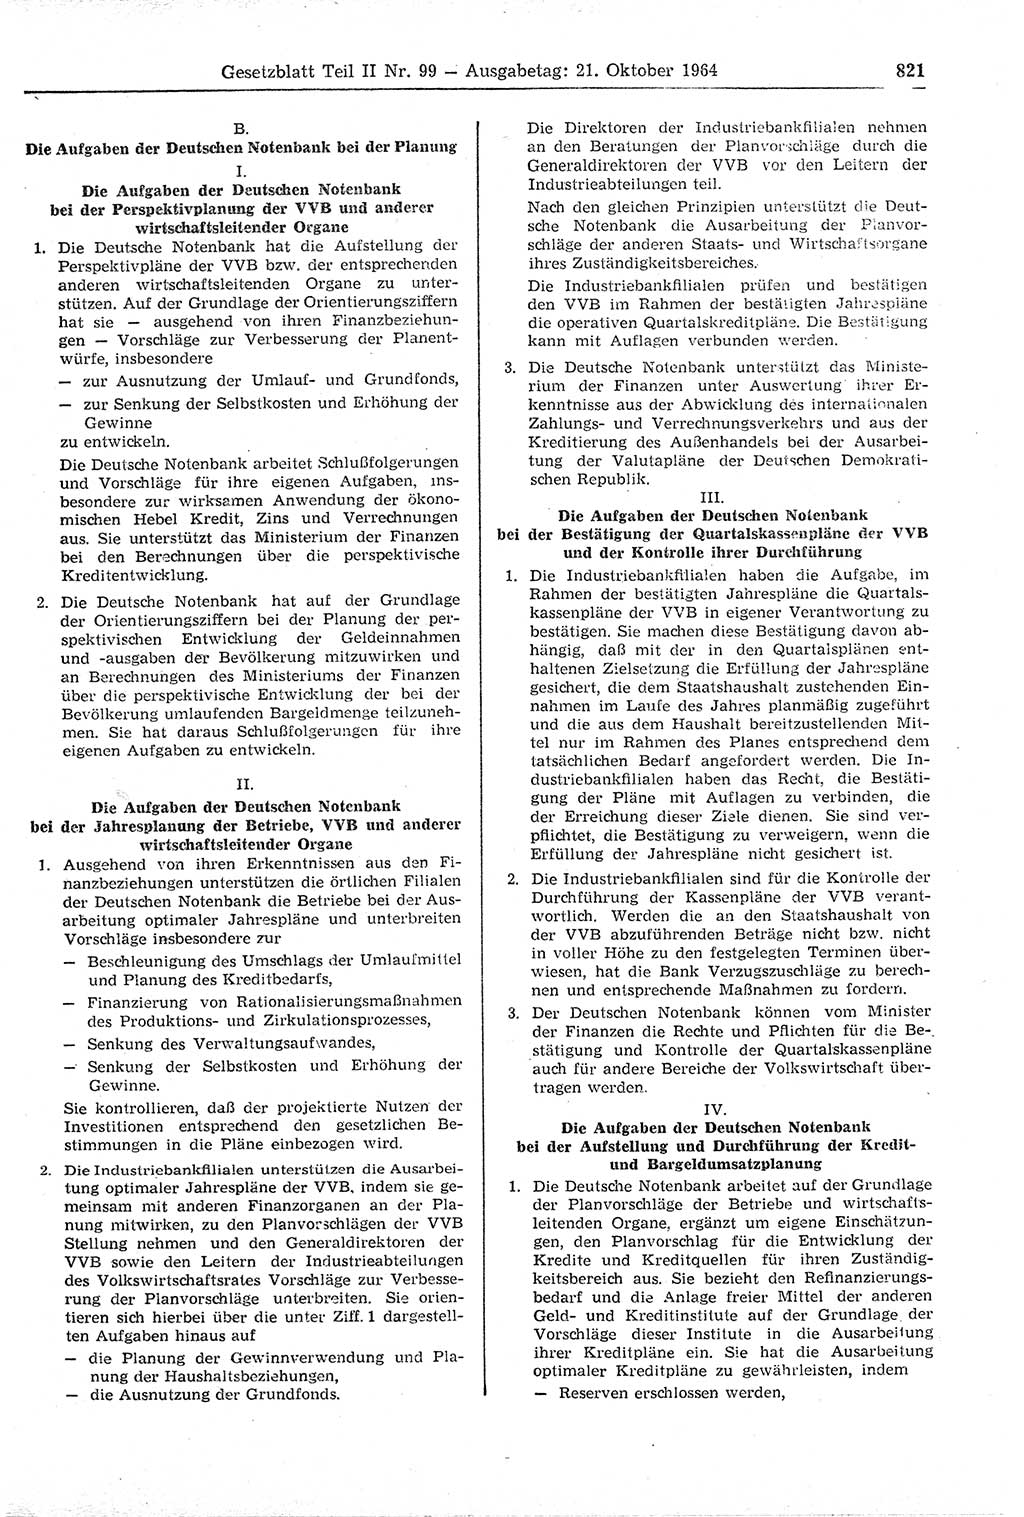 Gesetzblatt (GBl.) der Deutschen Demokratischen Republik (DDR) Teil ⅠⅠ 1964, Seite 821 (GBl. DDR ⅠⅠ 1964, S. 821)